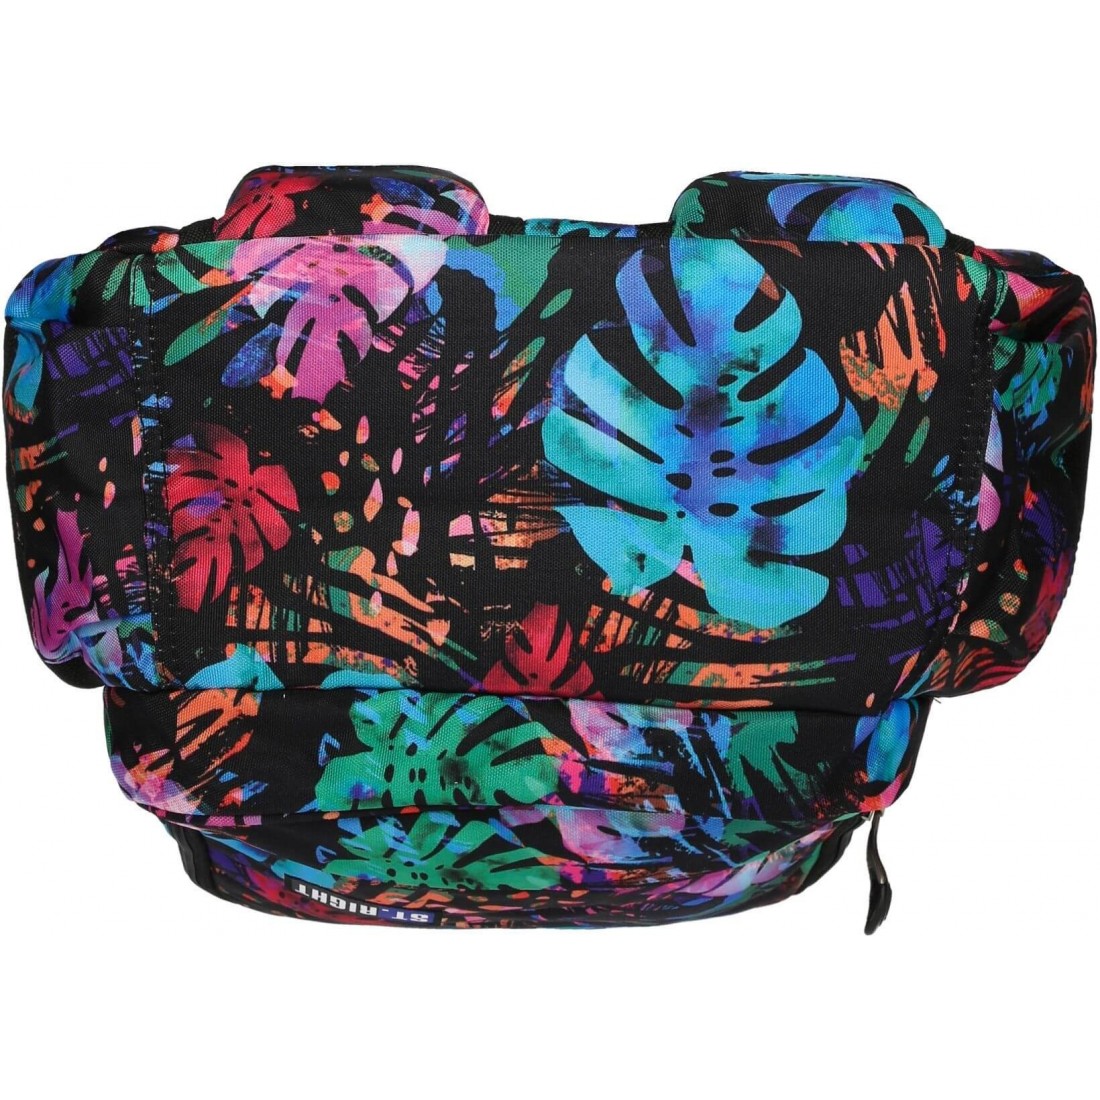 Plecak szkolny dla dziewczyn tropical ST.RIGHT Exotic Garden BP23 liście kolorowe - plecak-tornister.pl